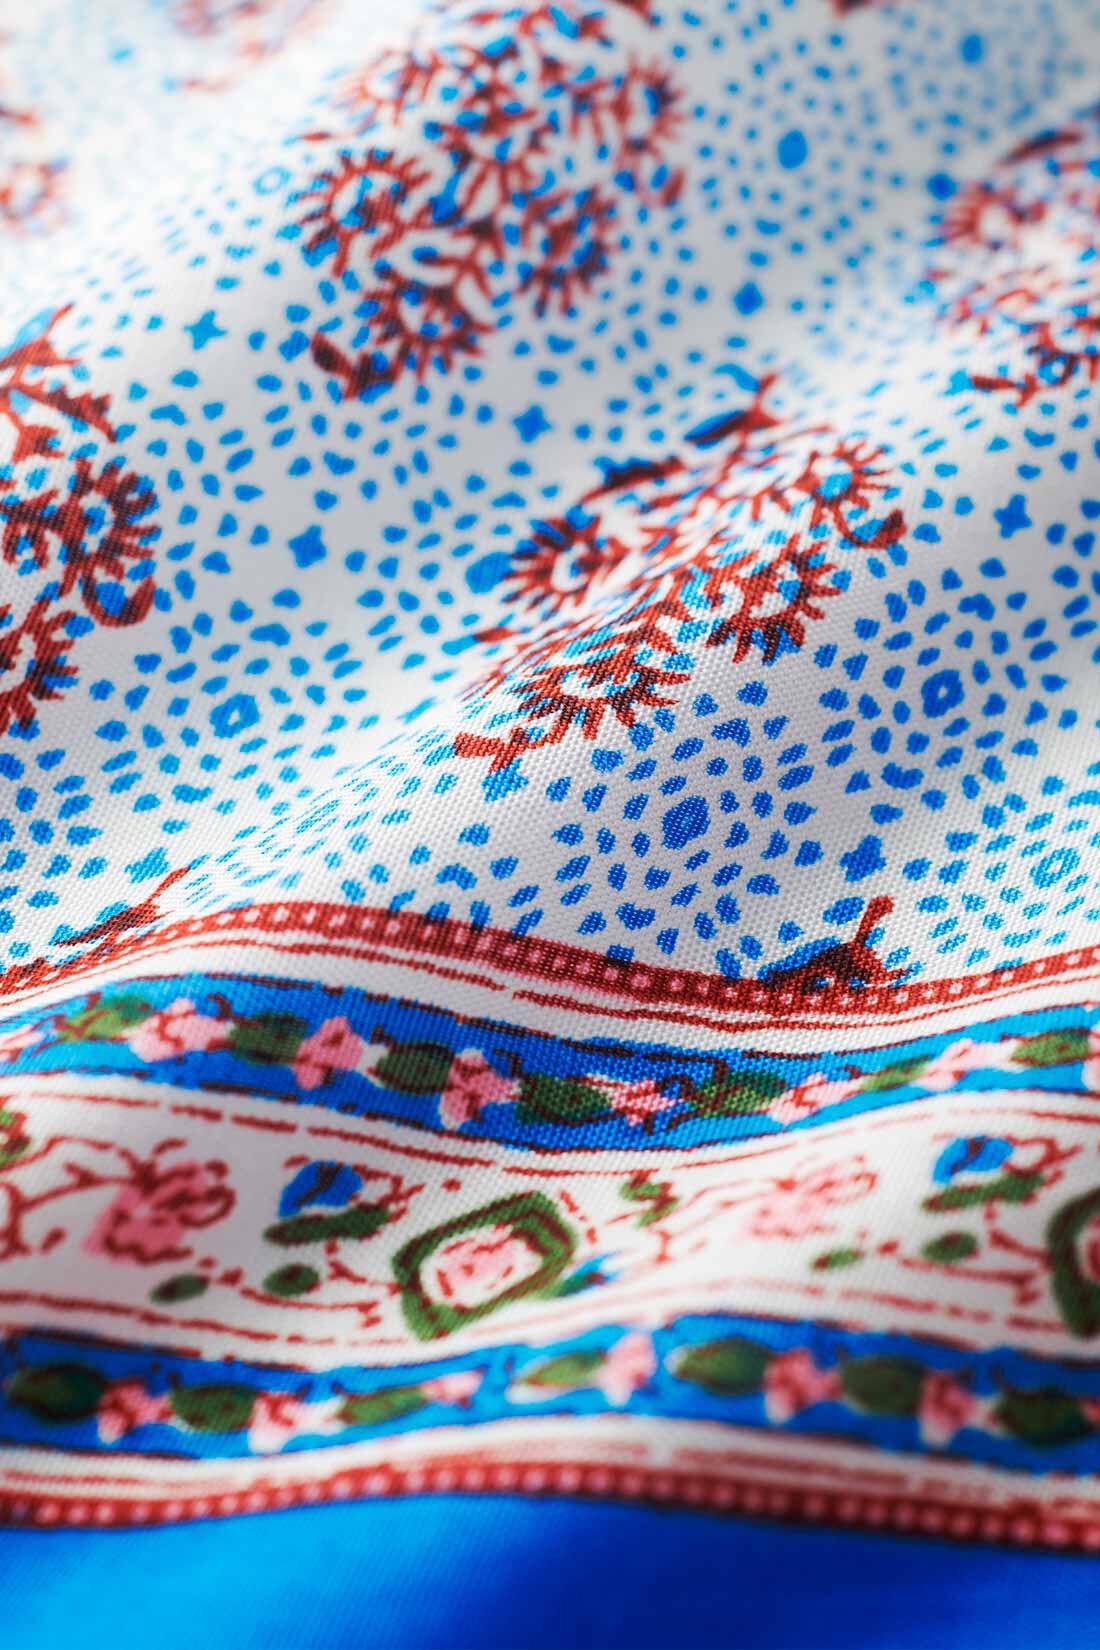 THREE FIFTY STANDARD|THREE FIFTY STANDARD インドのハンドスクリーンプリントでつくったワンピース〈ブルー〉|インドの伝統的な民族衣装サリーからインスピレーションを受けた柄を、落ち感のあるインドレーヨン生地にほどこしました。